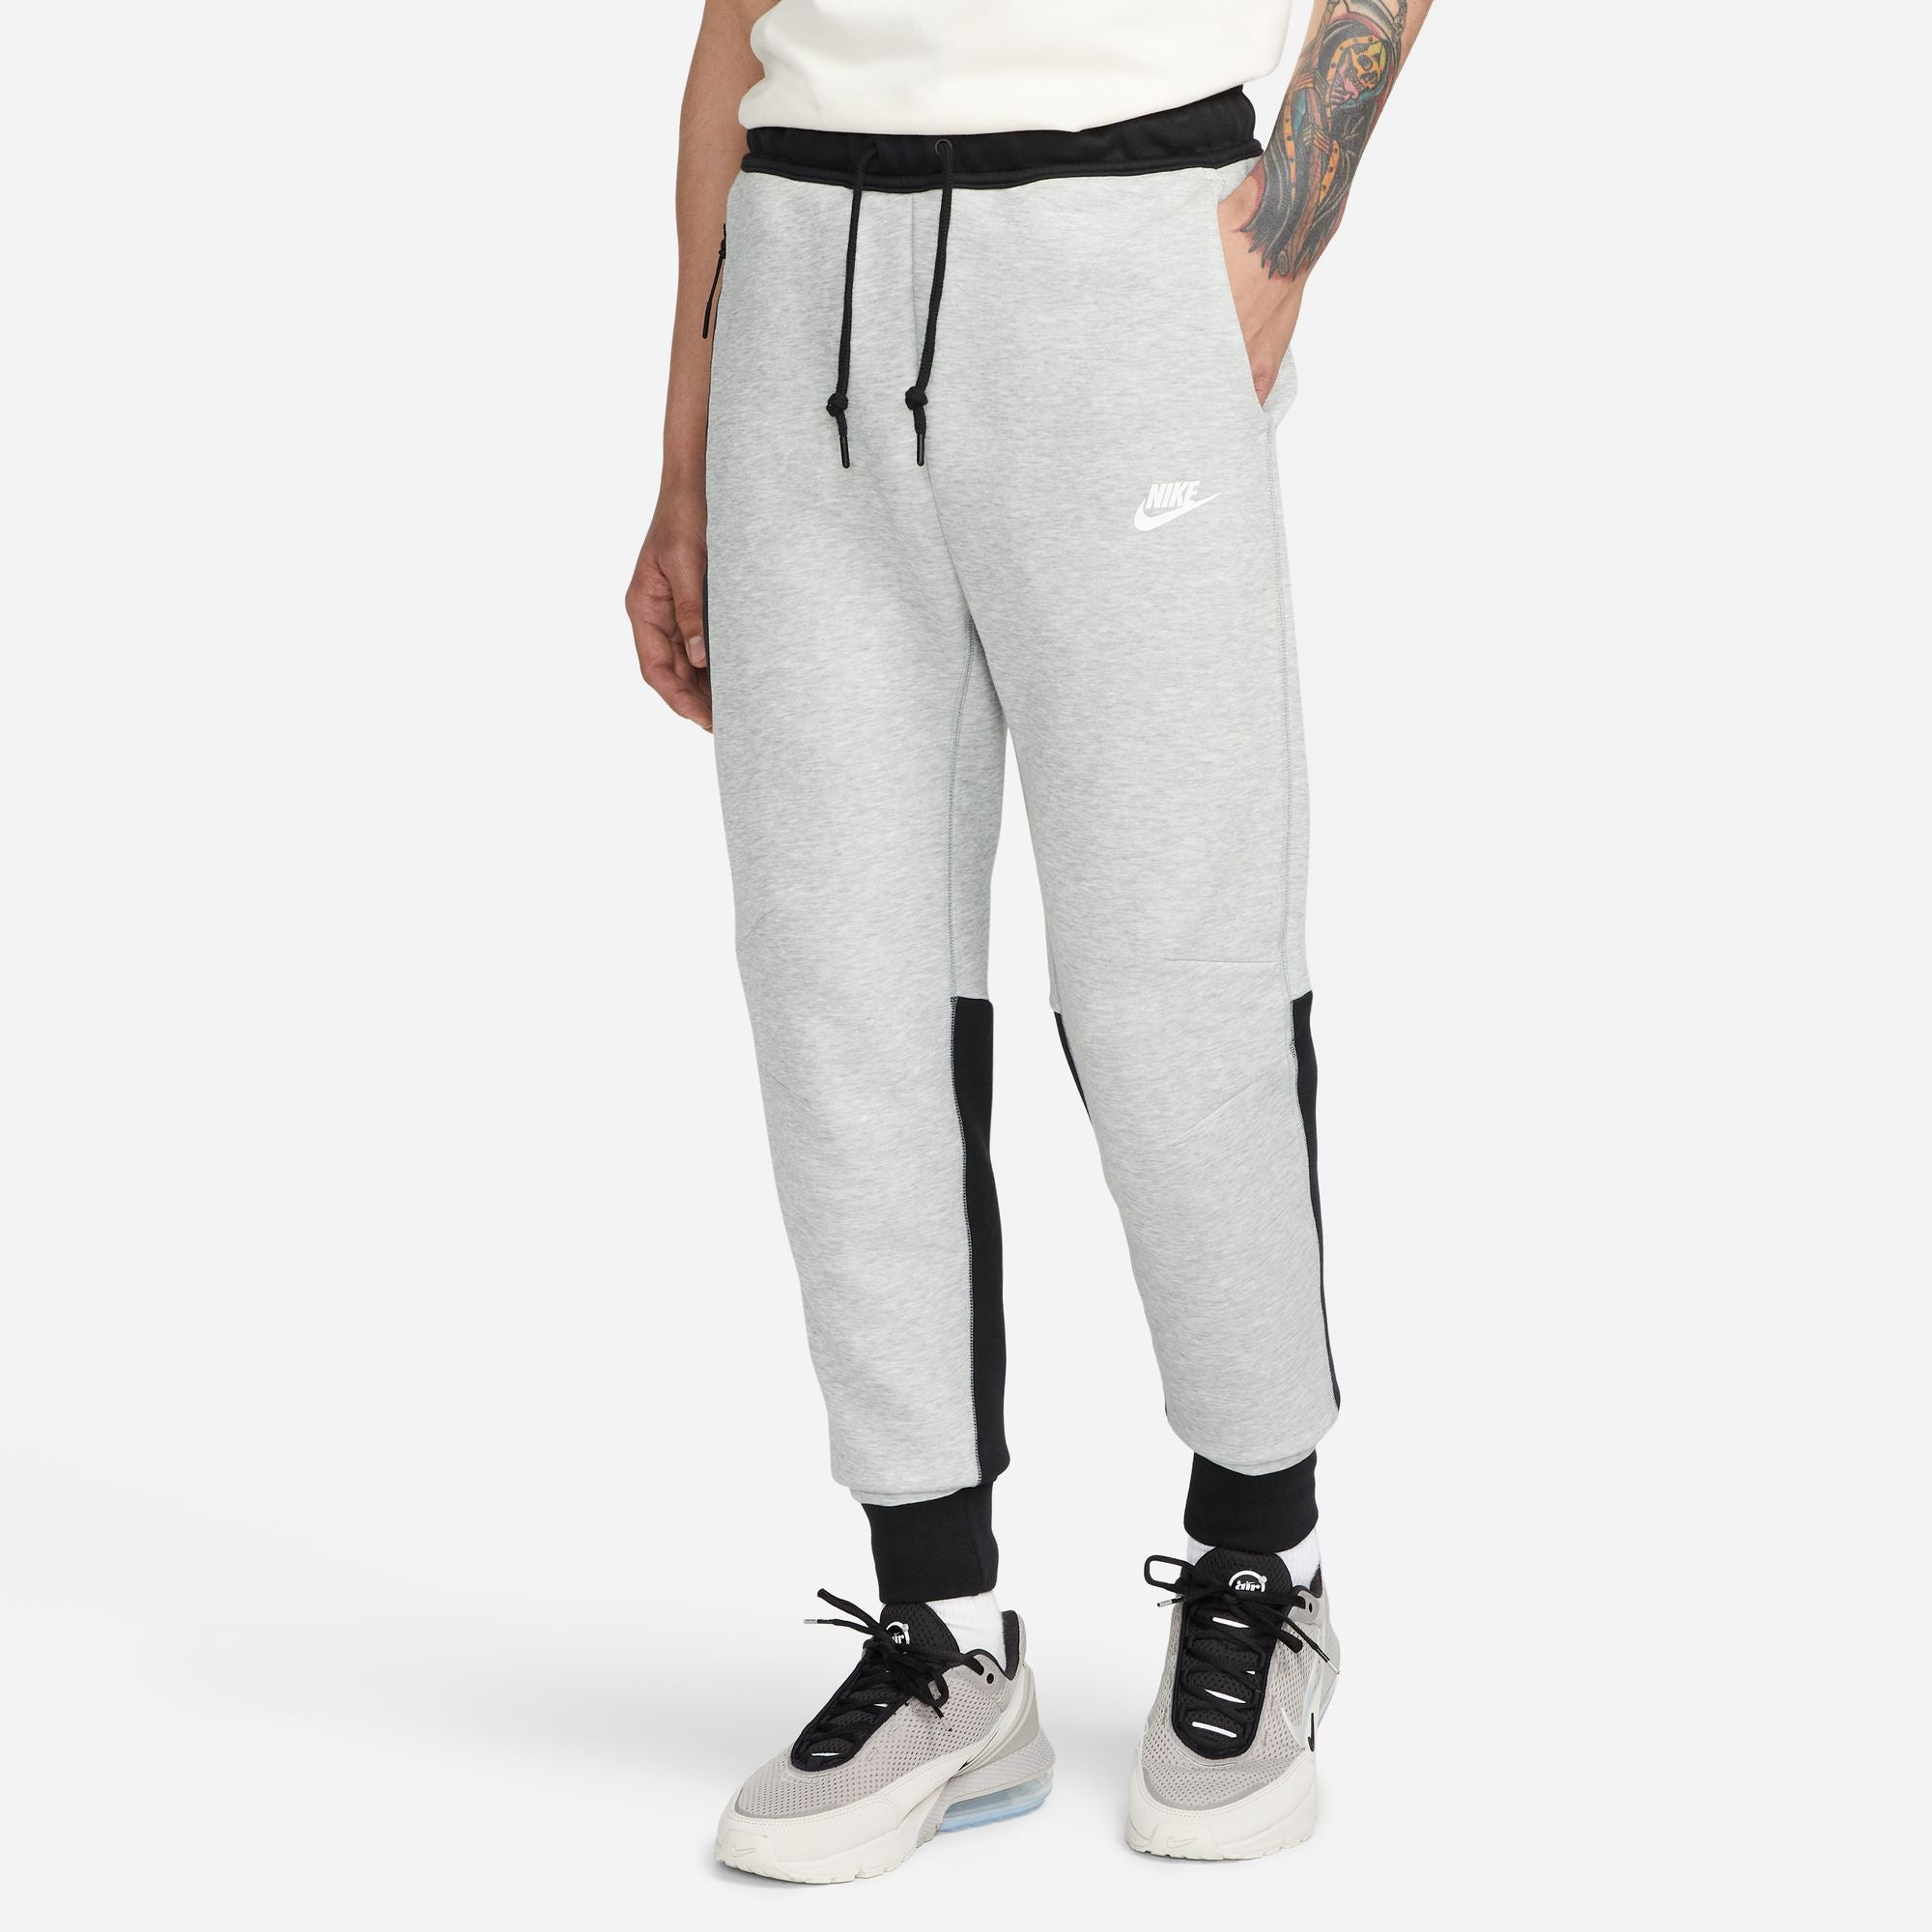 Pantalon Nike Tech Fleece – Grau/Schwarz